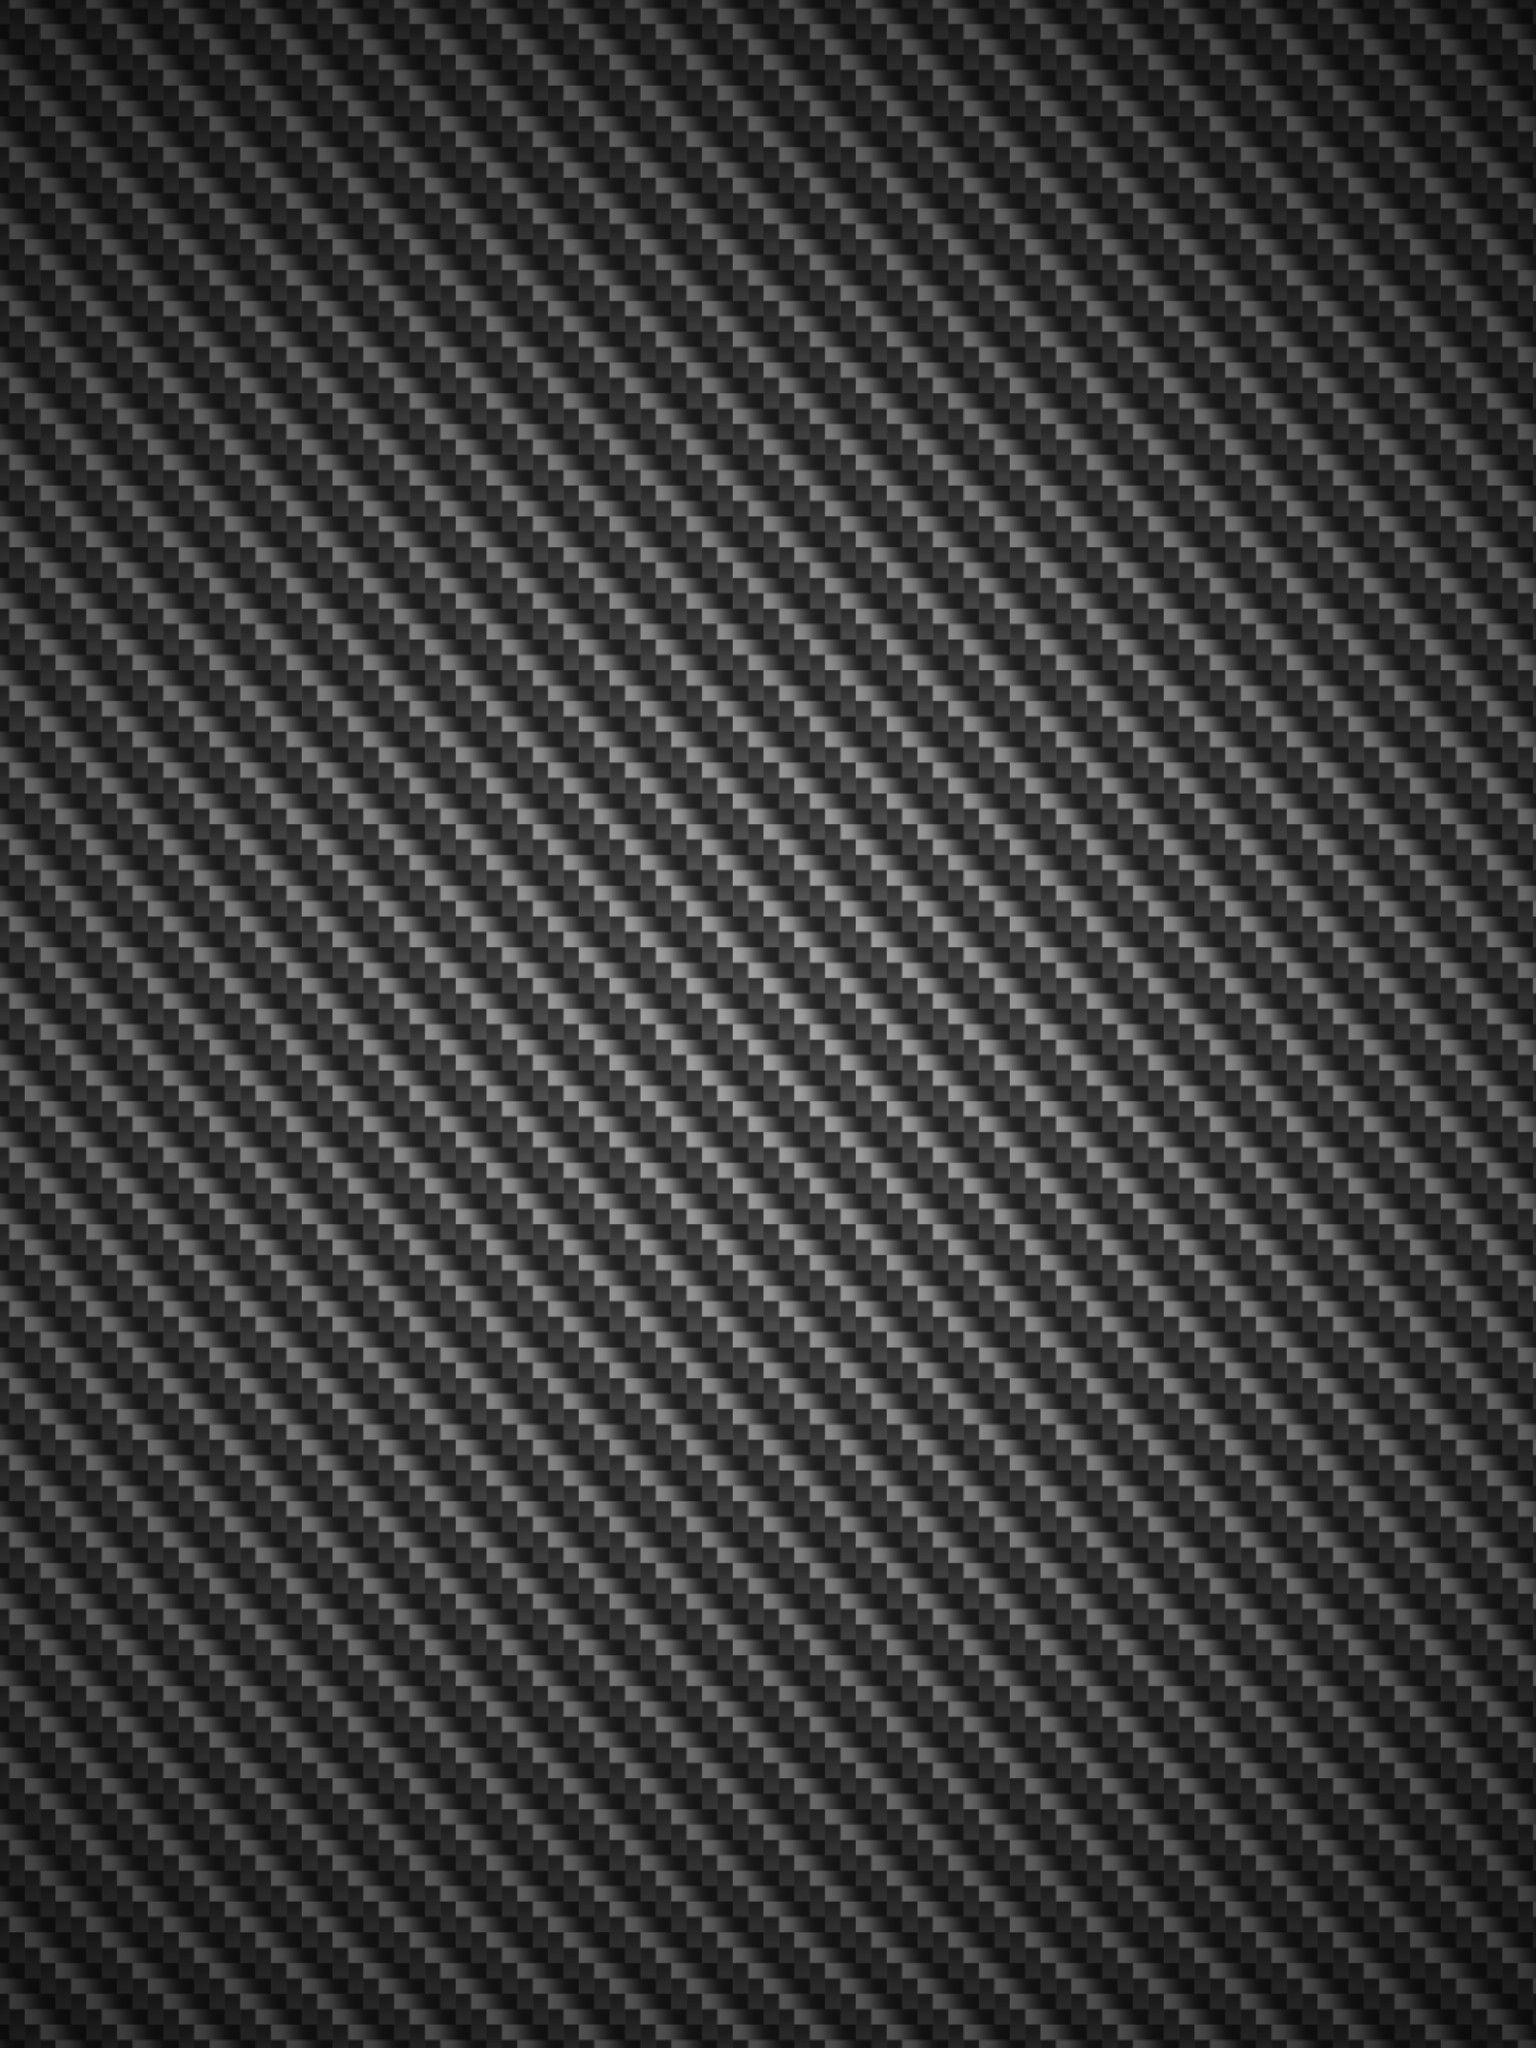 Carbon Fiber Wallpapers Iphone Wallpaper Cave